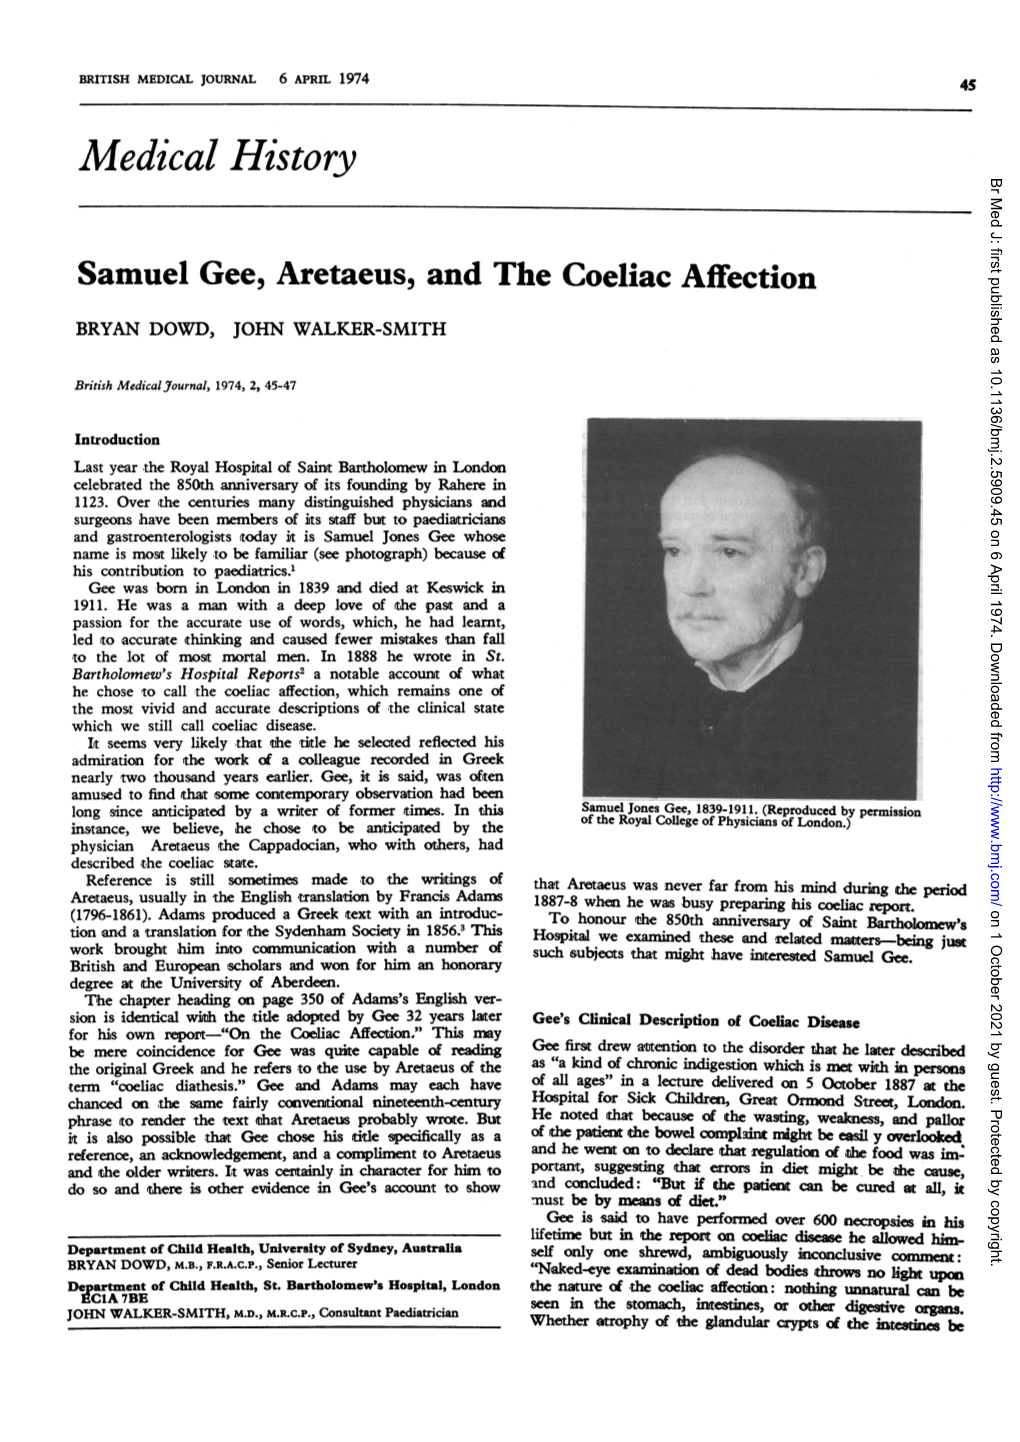 Samuel Gee, Aretaeus, and the Coeliac Affection